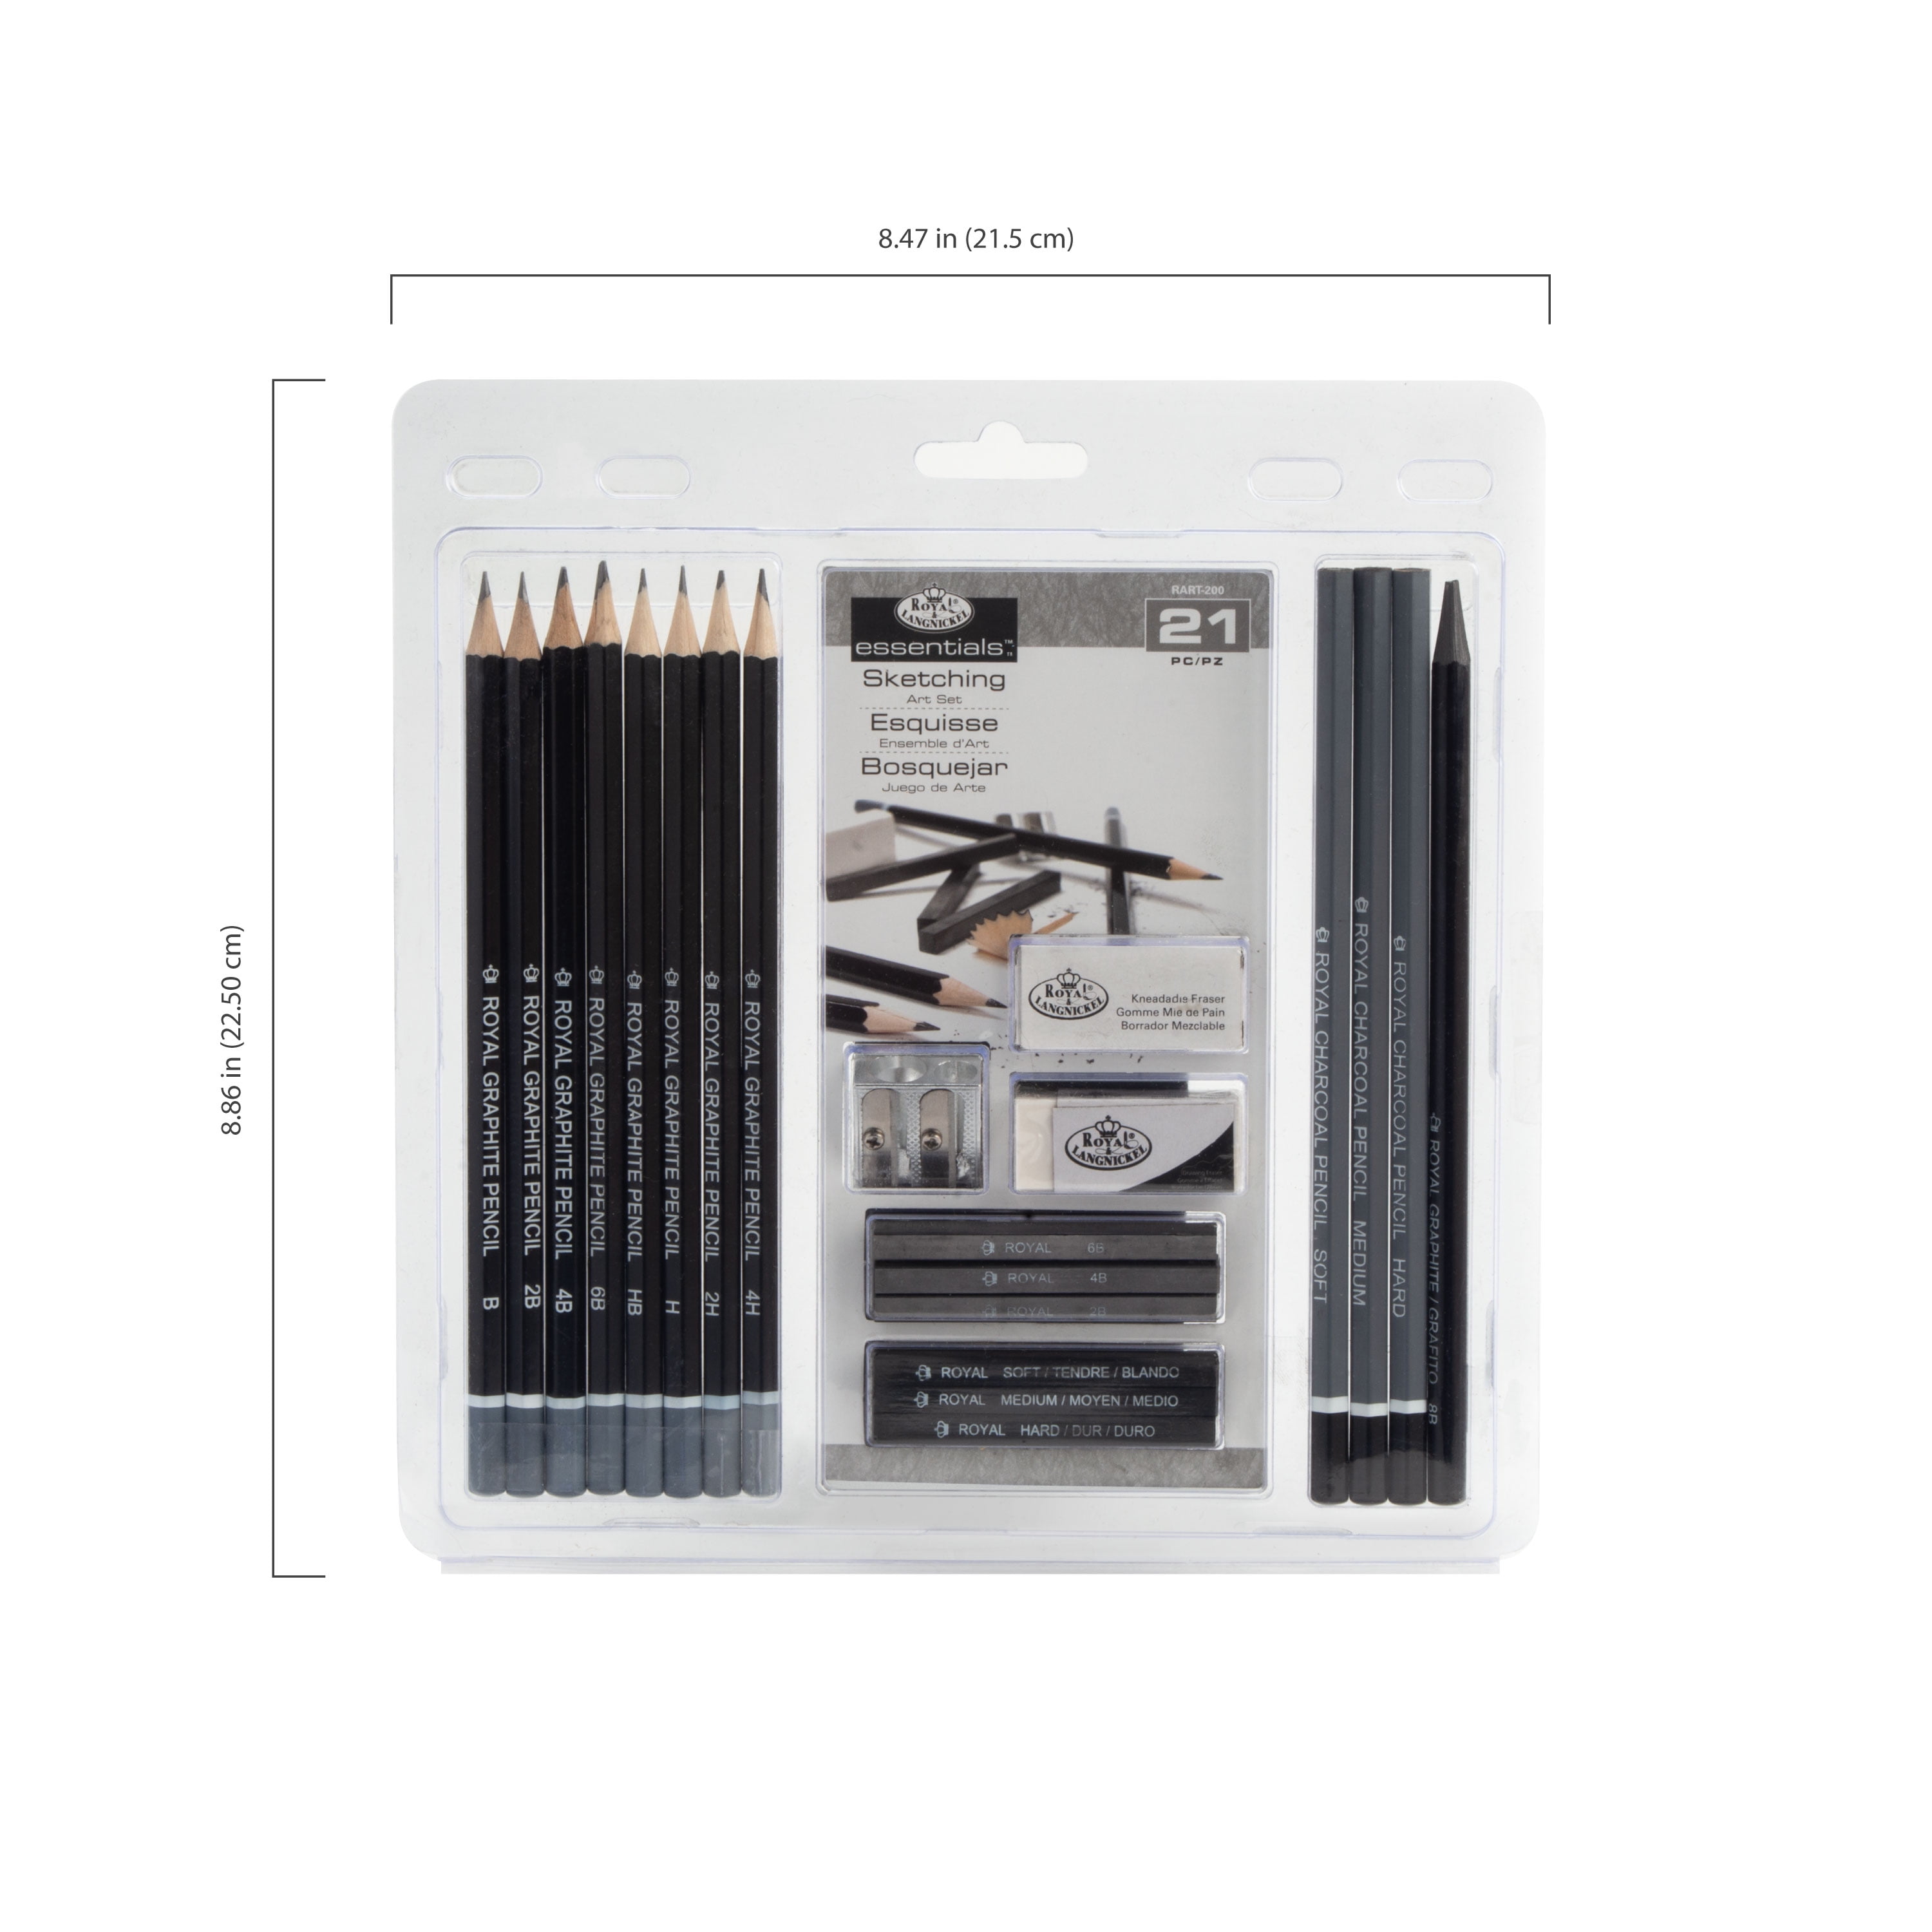  AONLSKH Sketching and Drawing Pencils Set-35pcs,Art